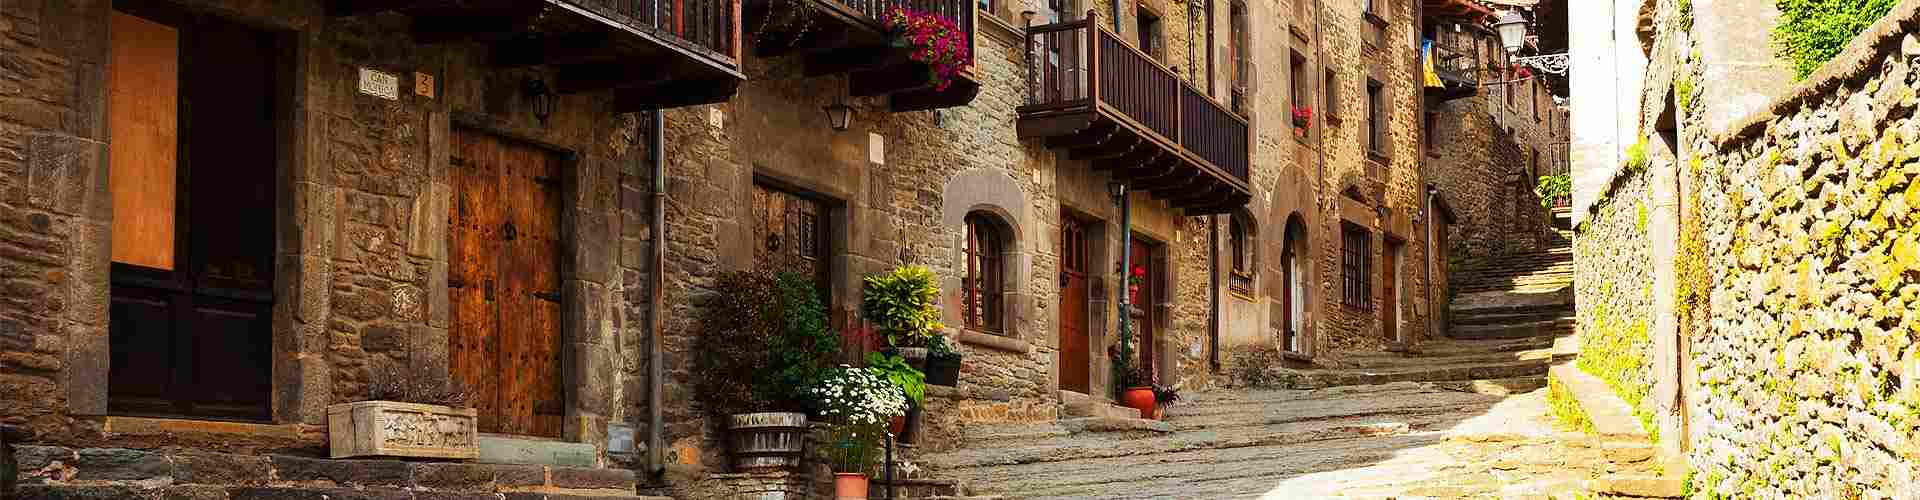 Casas rurales con restaurante en Aragón
          
          

